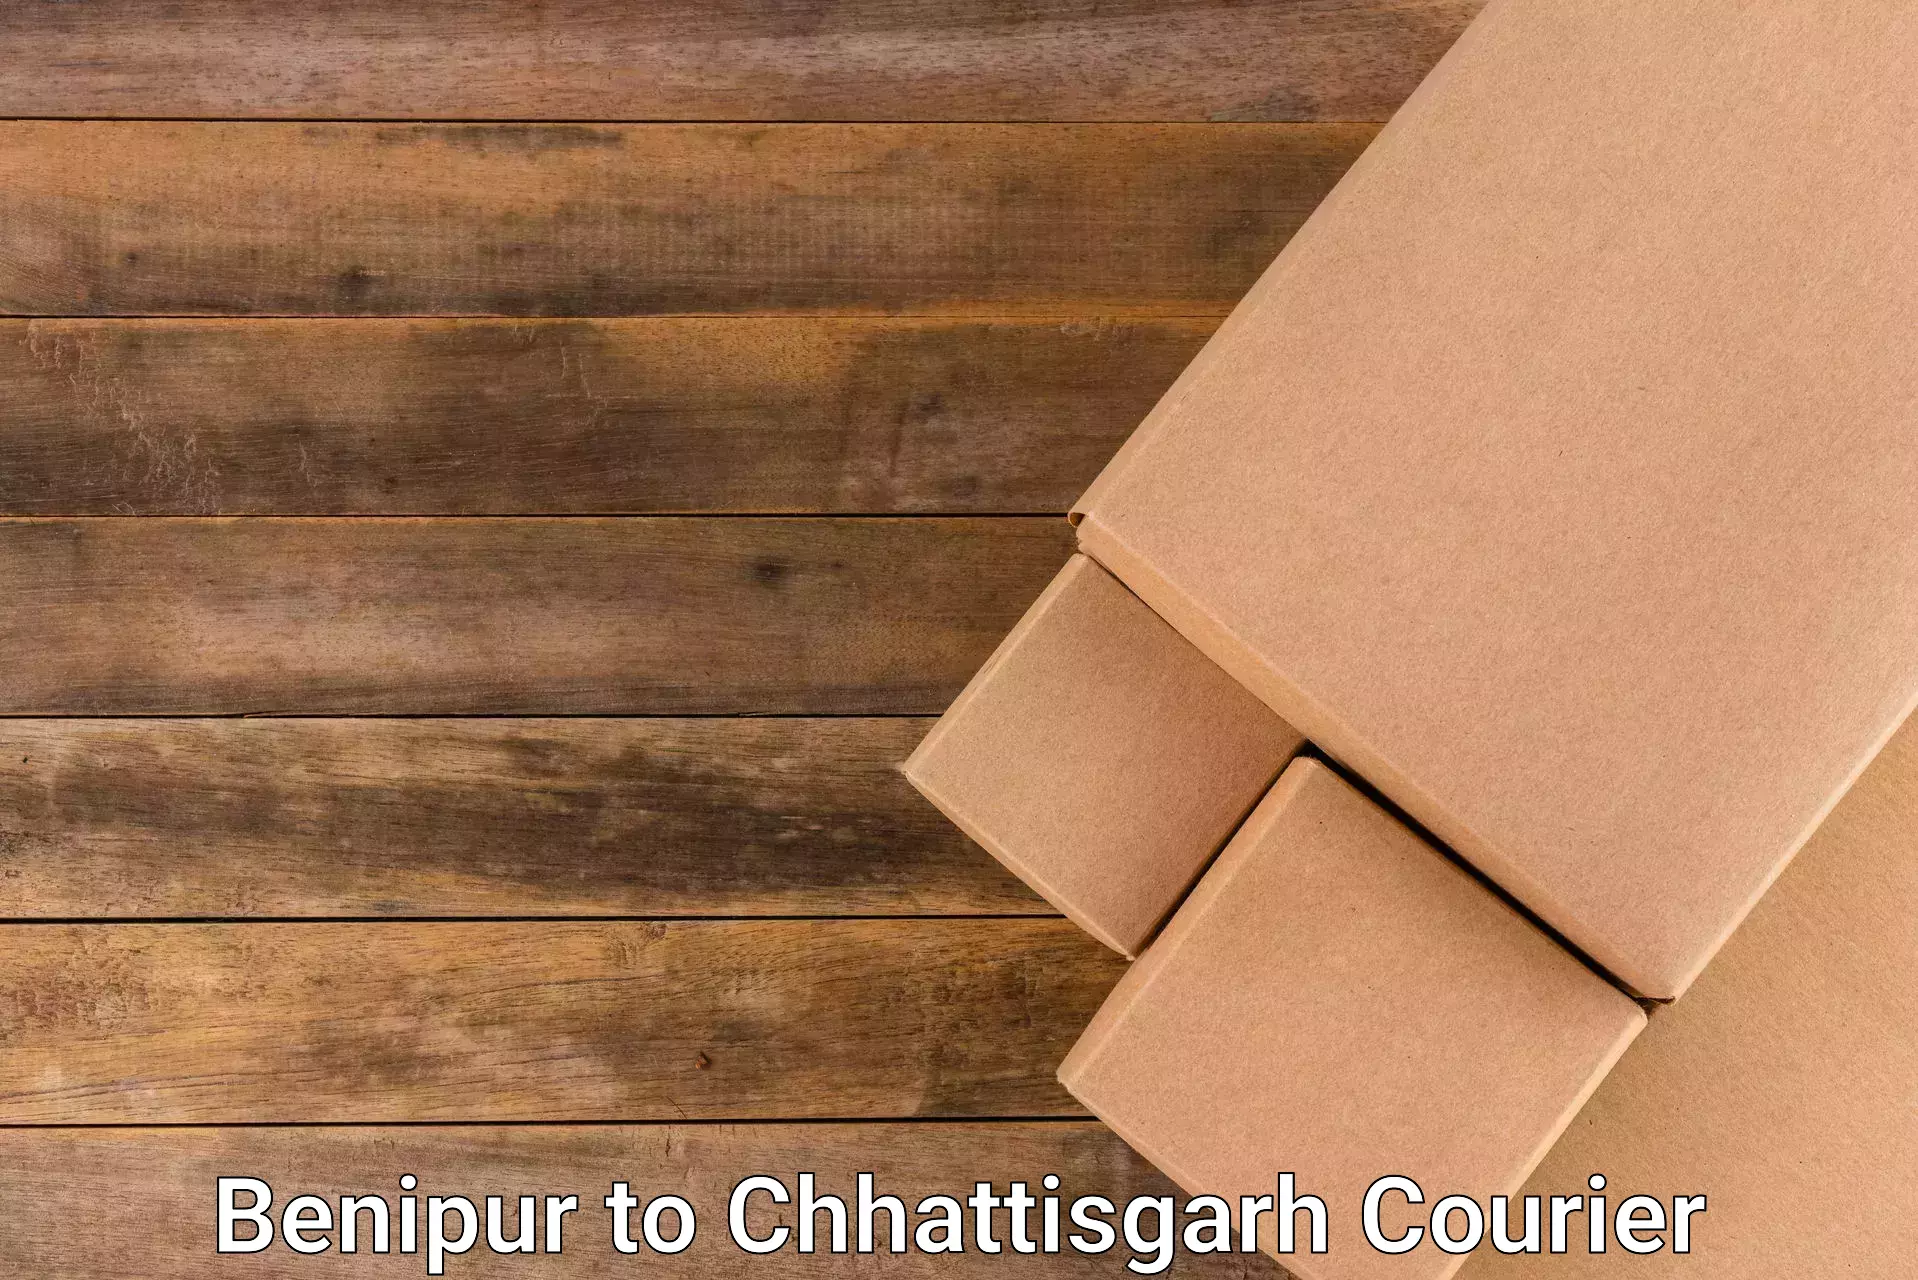 Air courier services Benipur to Chhattisgarh